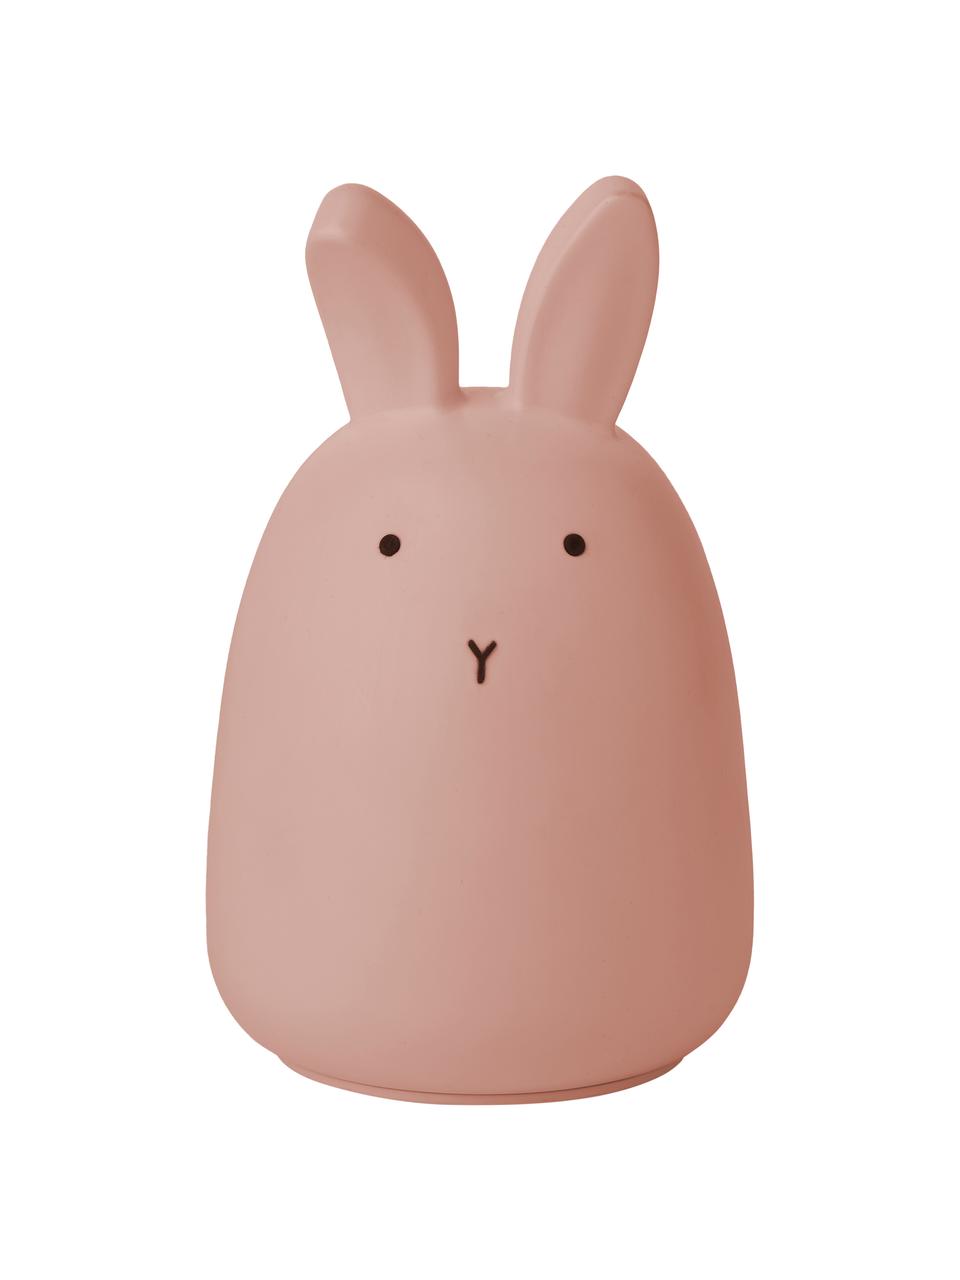 Dekoracja świetlna LED Winston Rabbit, 100% silikon, Blady różowy, Ø 11 x W 14 cm